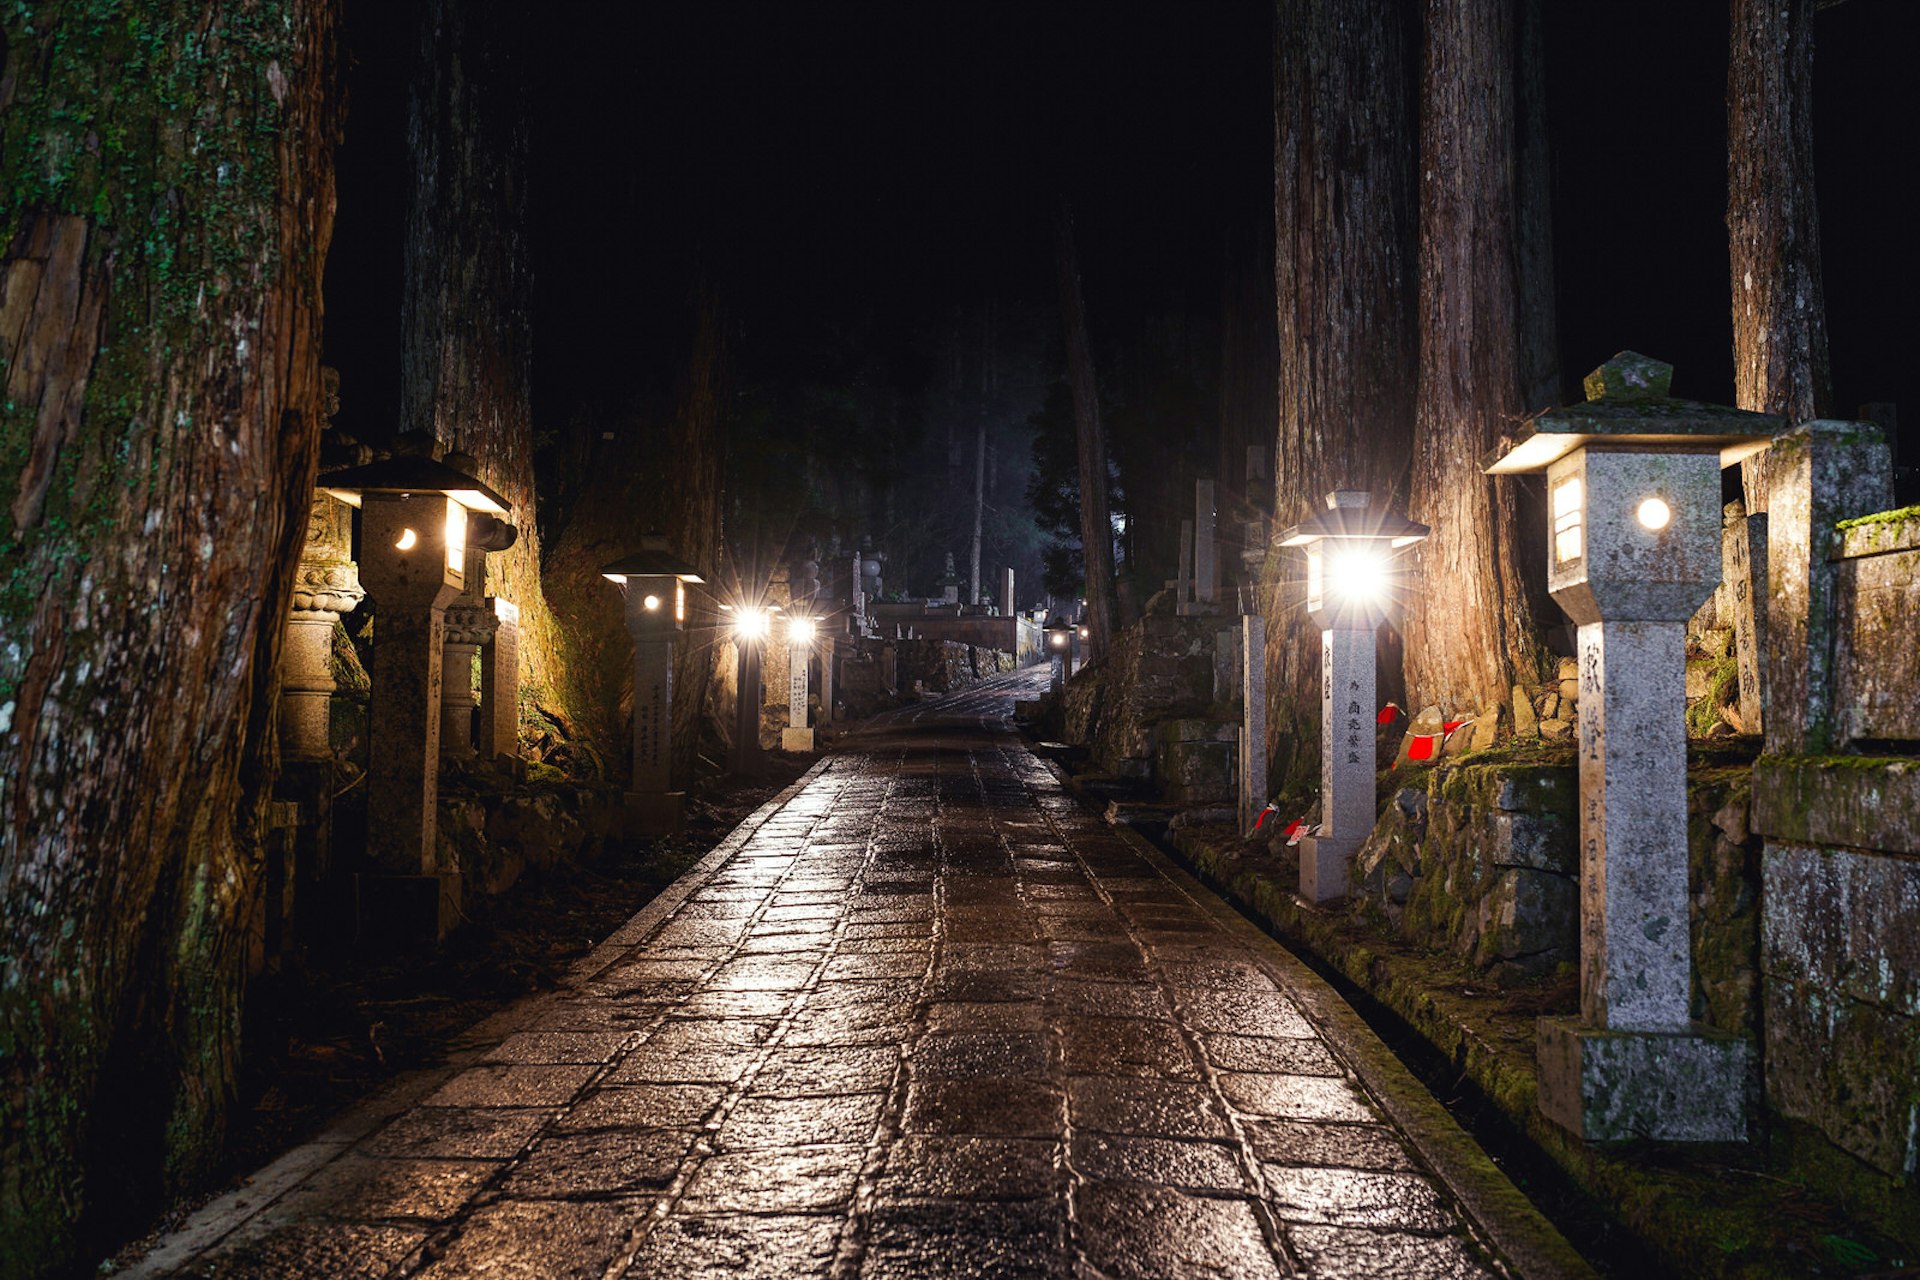 Kōya-san travel - Oku-no-in's lantern-lit pathways seen at night 